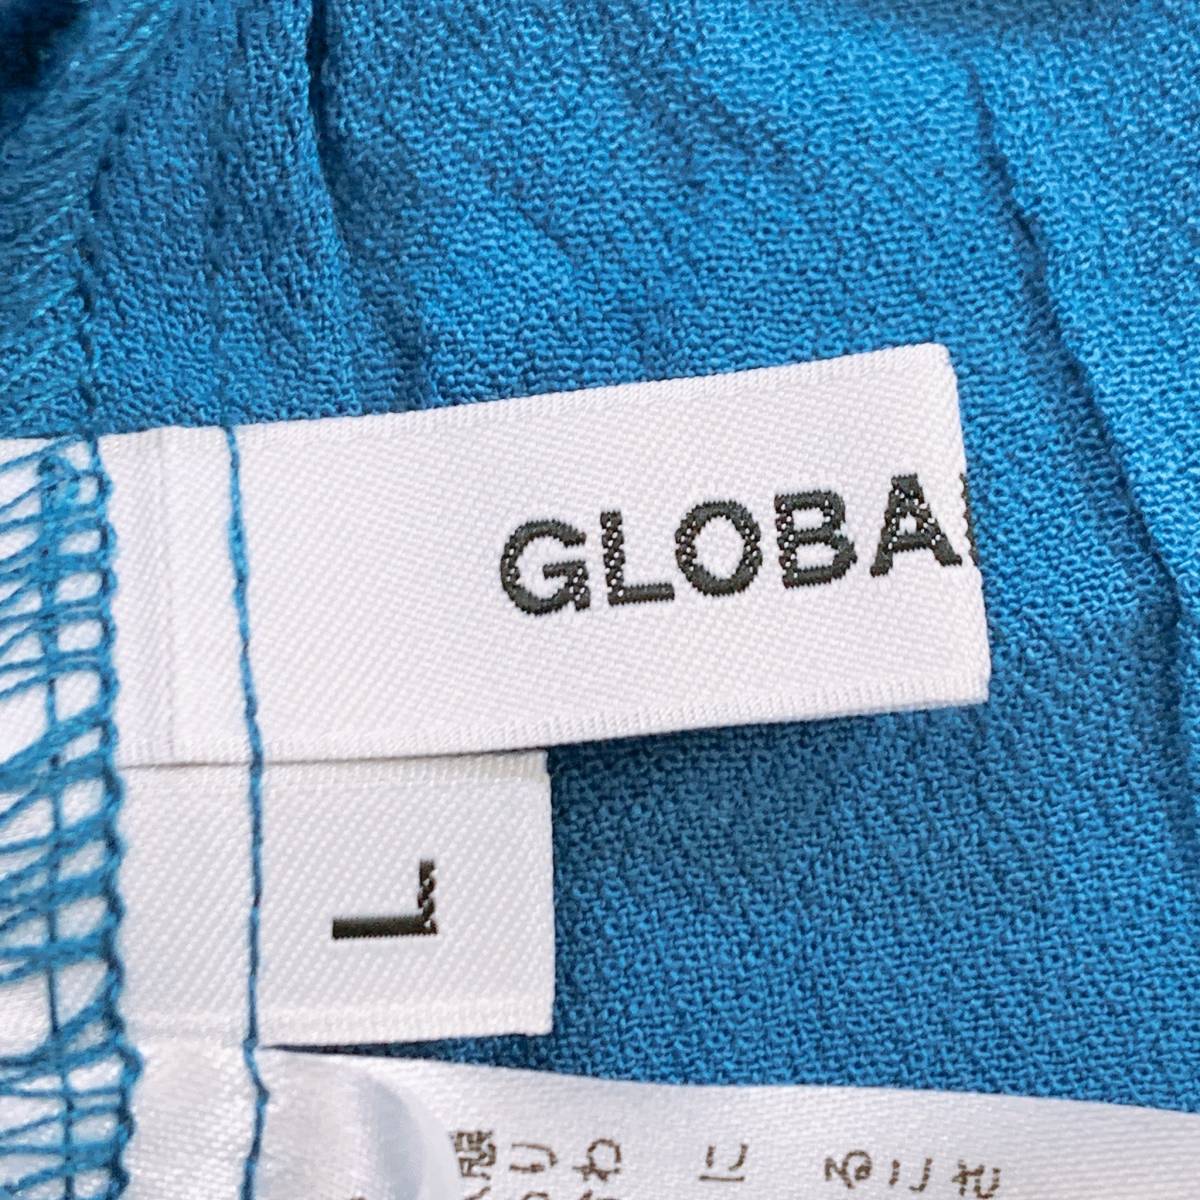 新品 レディースL GLOBAL WORKS 半袖ブラウス 刺繍 青 ブルー タグ付き レーヨン100 ポリエステル100 グローバルワーク 【14922】